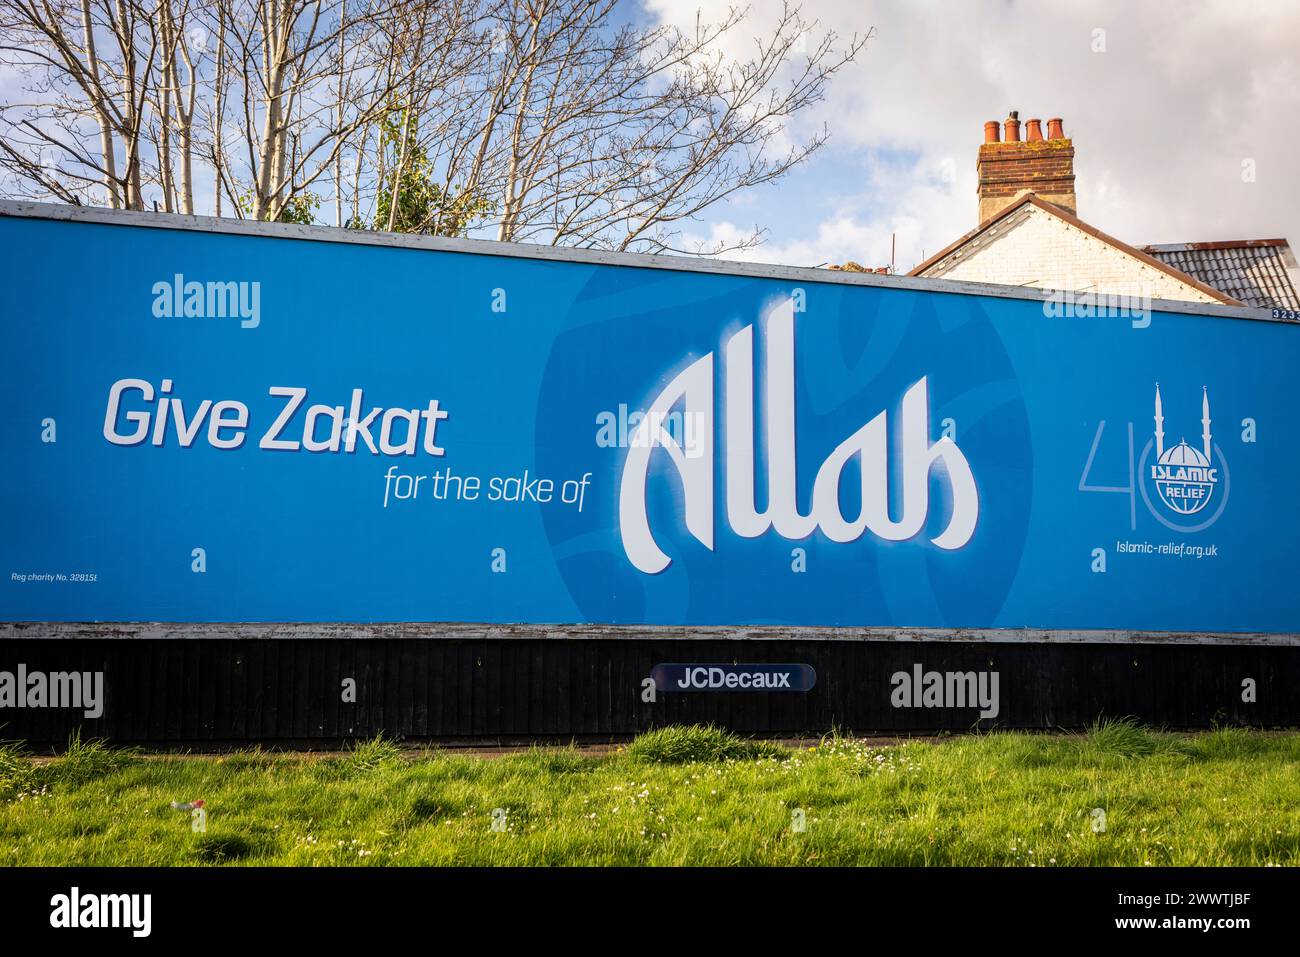 Cartellone pubblicitario per l'associazione benefica Islamic Relief per fare / dare una donazione Zakat per il bene di Allah, Southampton, Hampshire, Inghilterra, Regno Unito Foto Stock